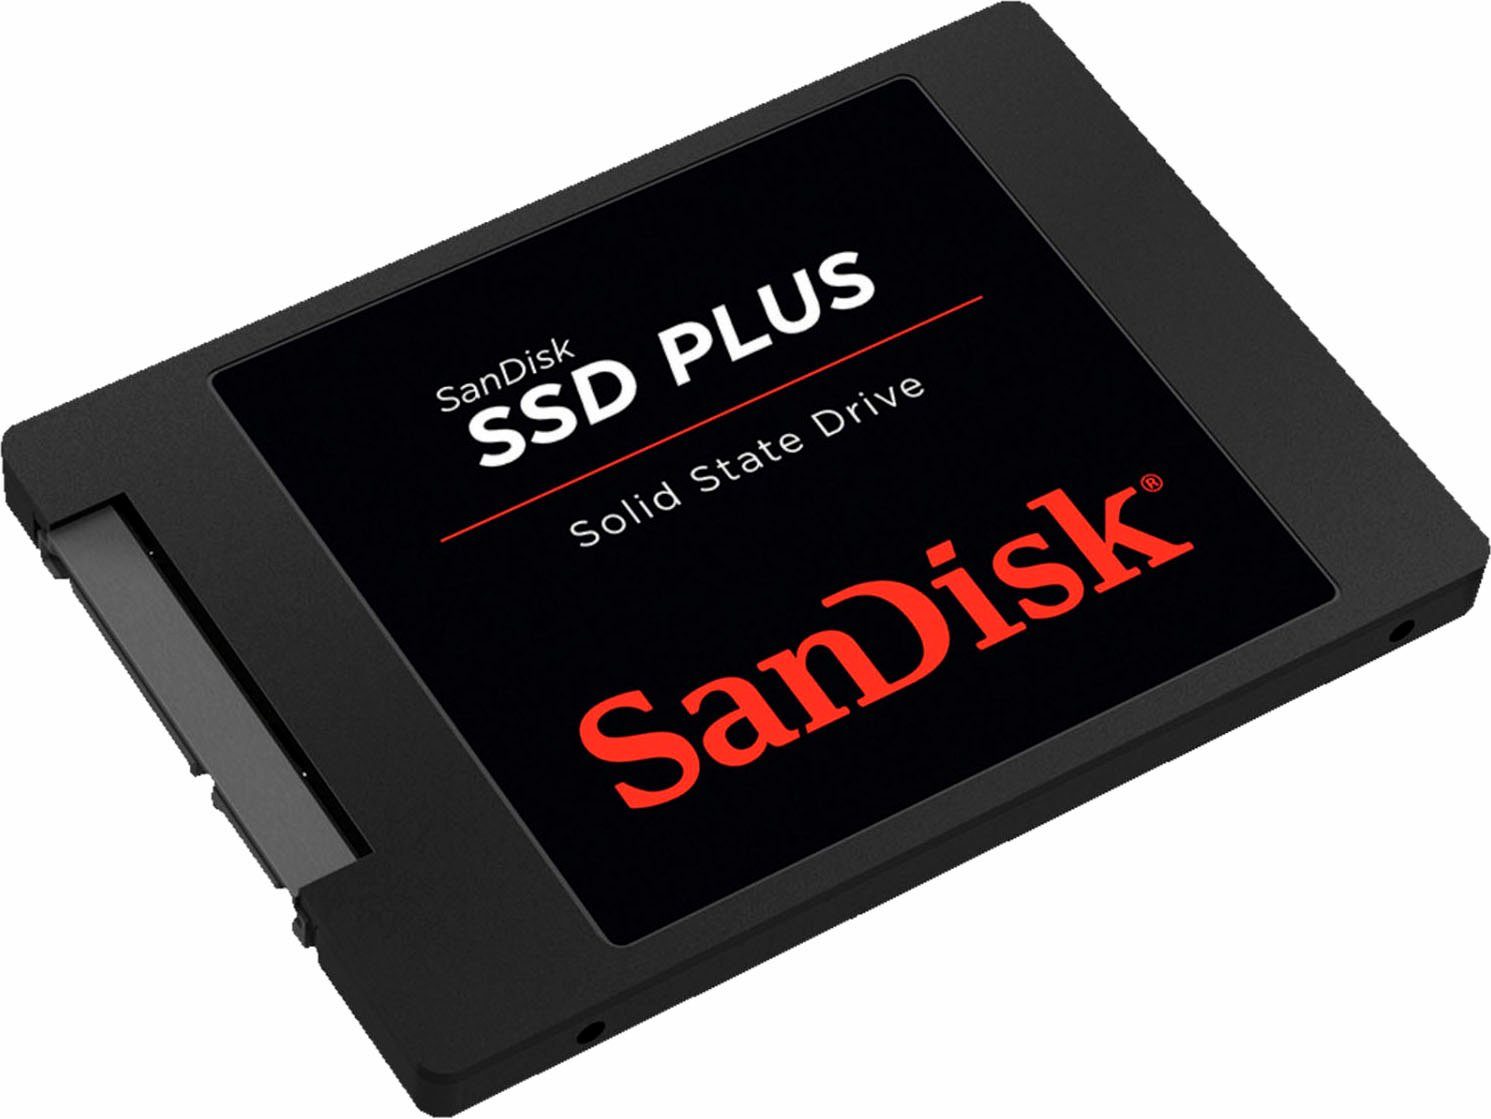 Sandisk SSD PLUS interne SSD (2 TB) 530 MB/S Lesegeschwindigkeit, 450 MB/S Schreibgeschwindigkeit